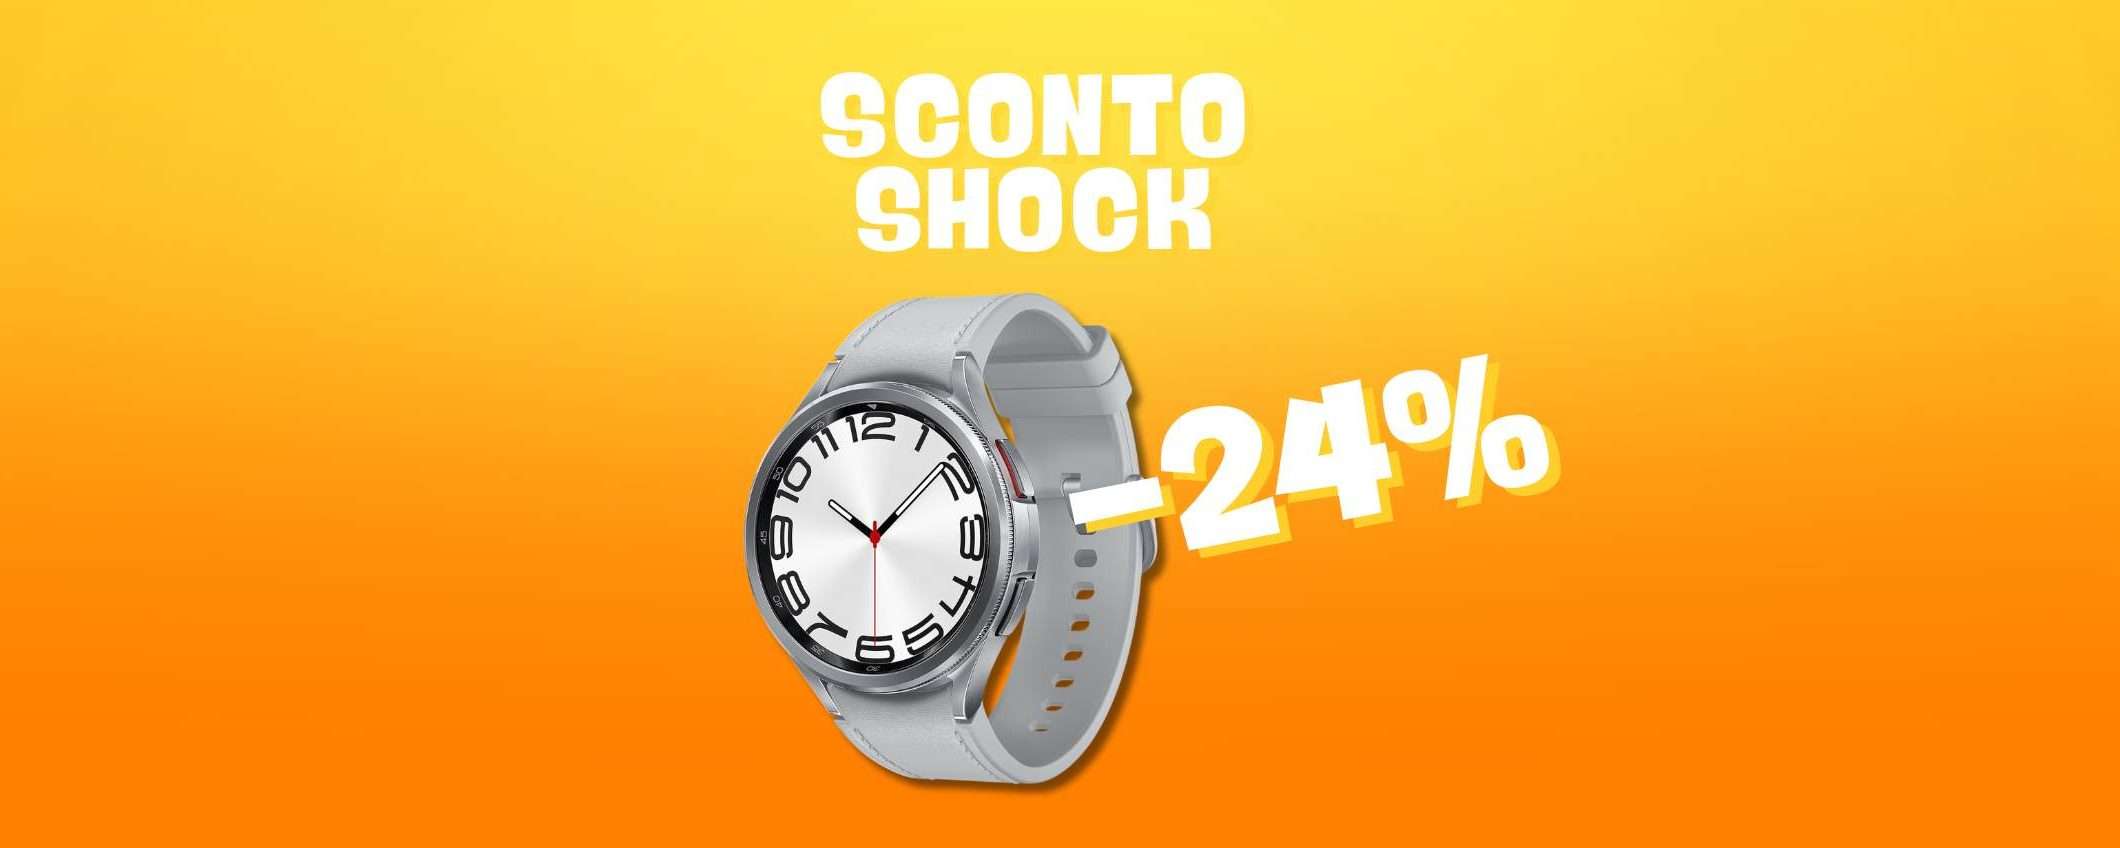 Samsung Galaxy Watch 6: prezzo SHOCK (-24%)